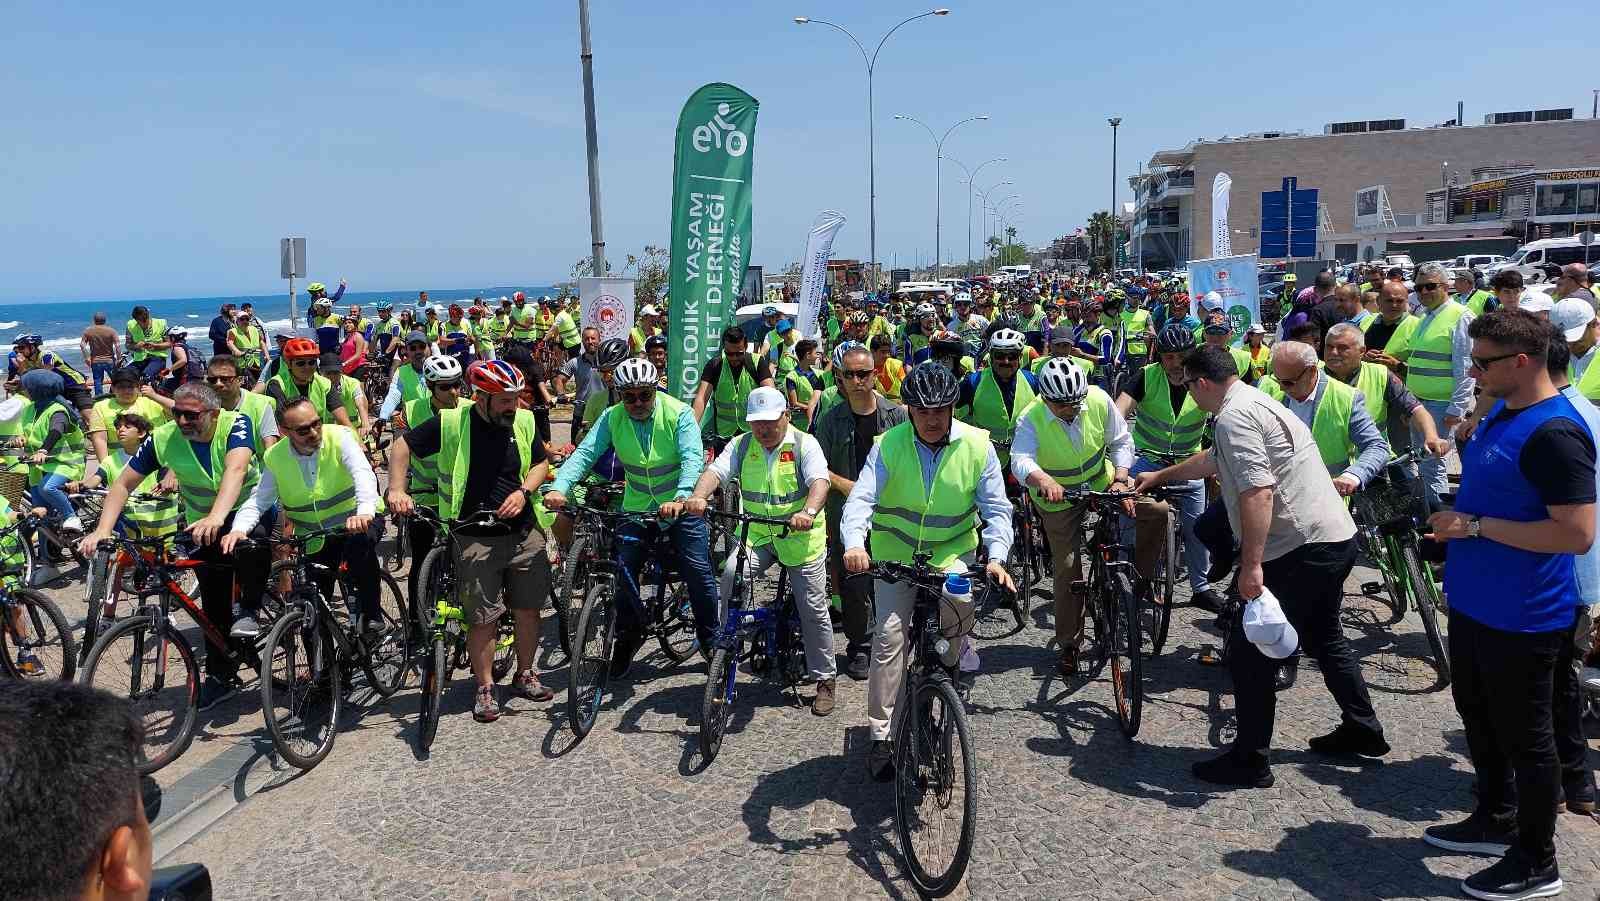 Samsun'da "Çevre Dostu Bir Yaşam" için bisiklet turu düzenlendi
